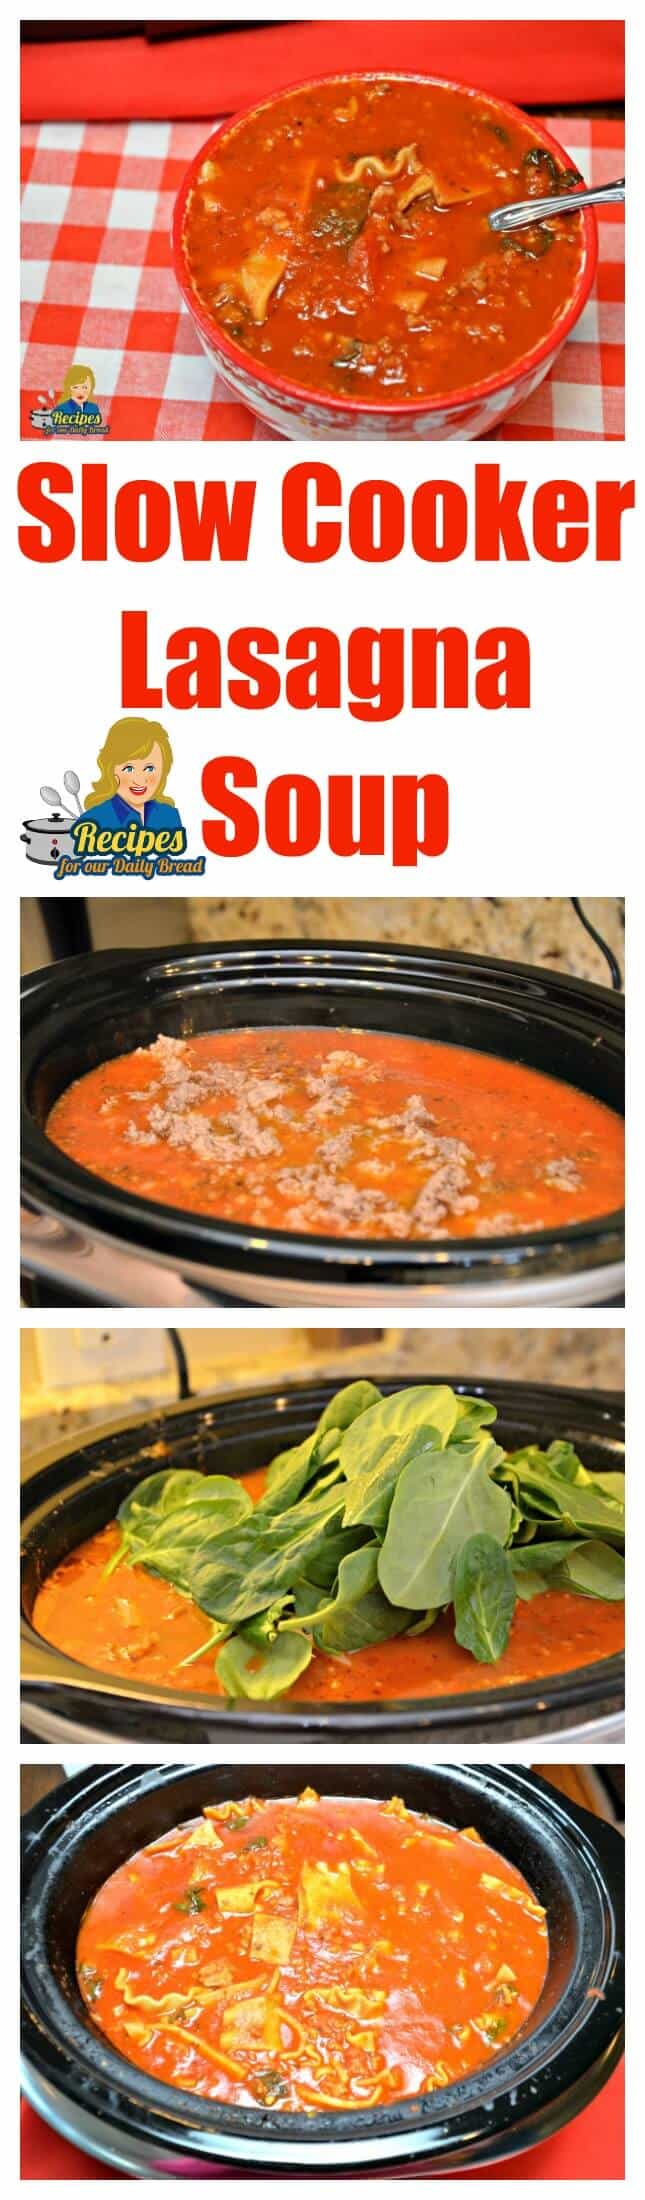 Slow cooker lasagna soup